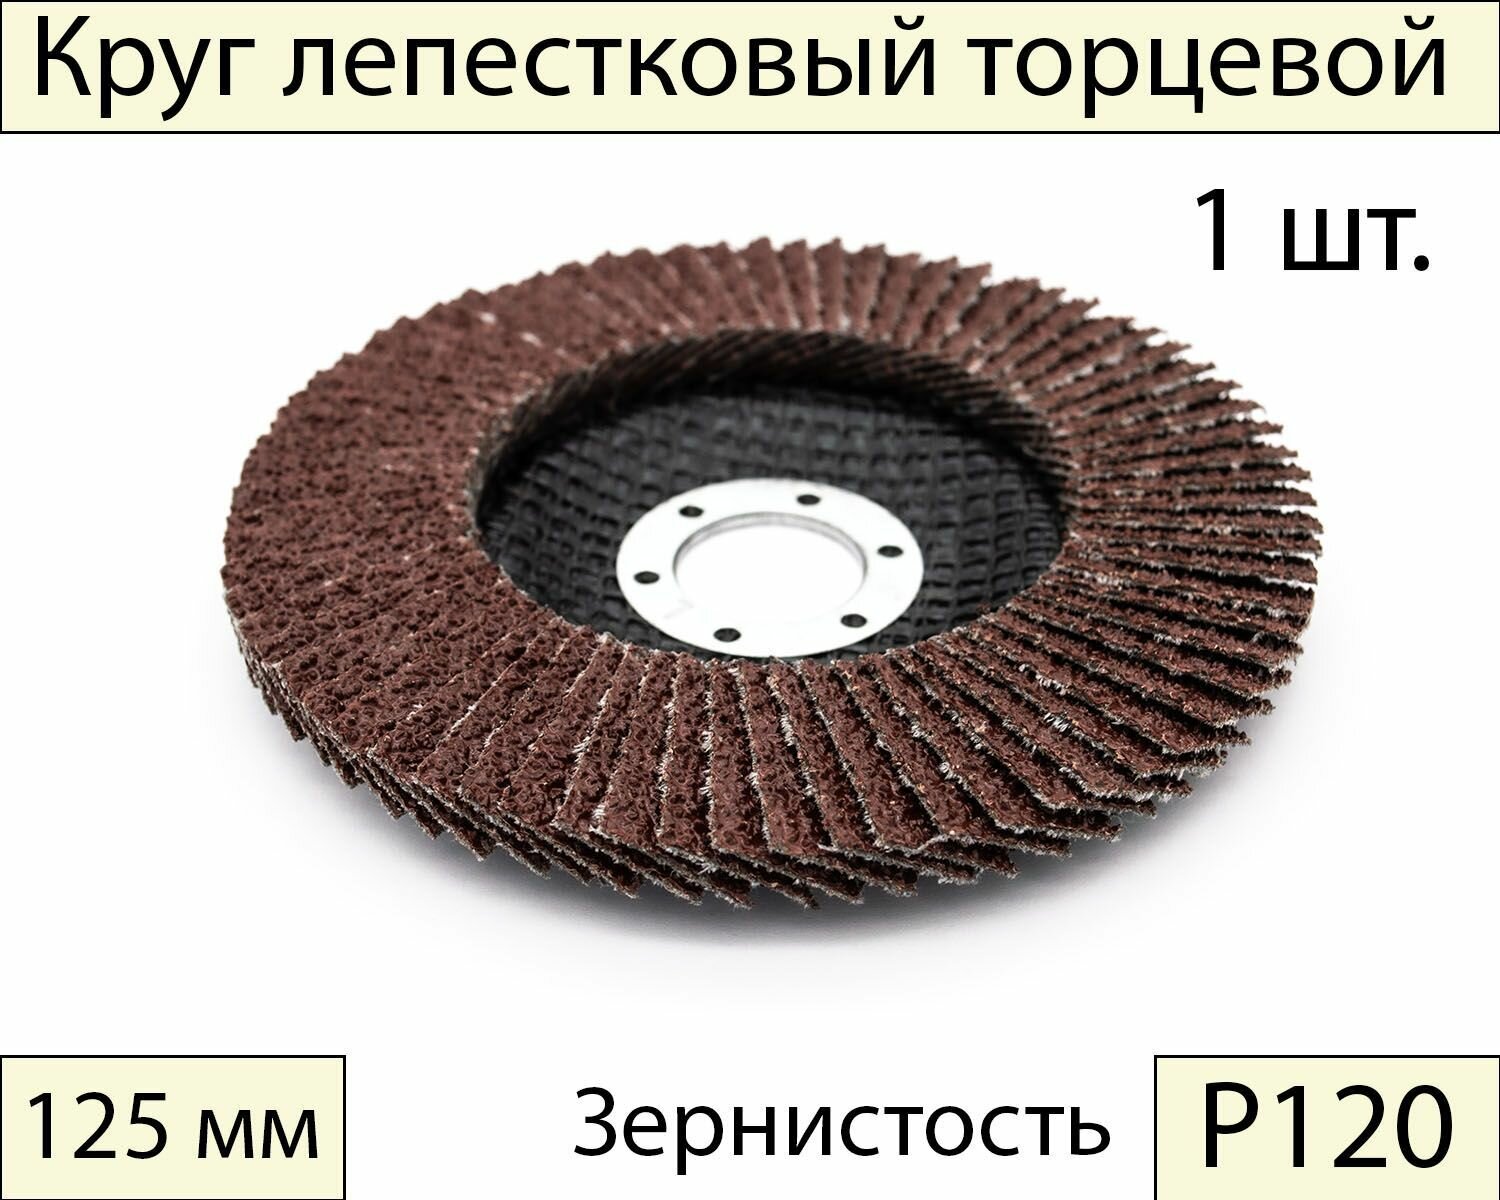 Круги шлифовальные абразивные / лепестковый торцевой диск 125 мм Р120 1 шт.